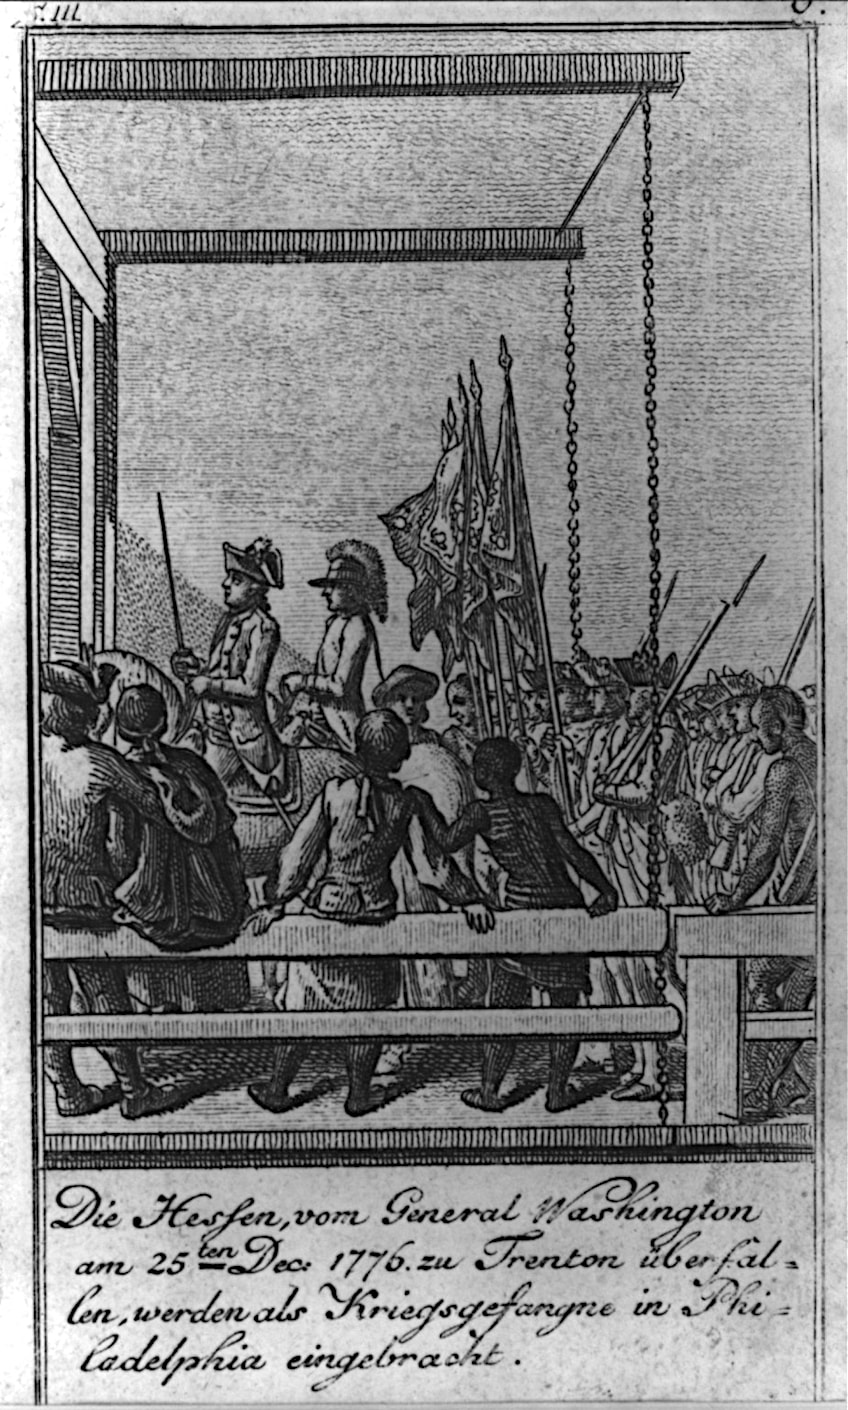 Hessian Captives from the Battle of Trenton